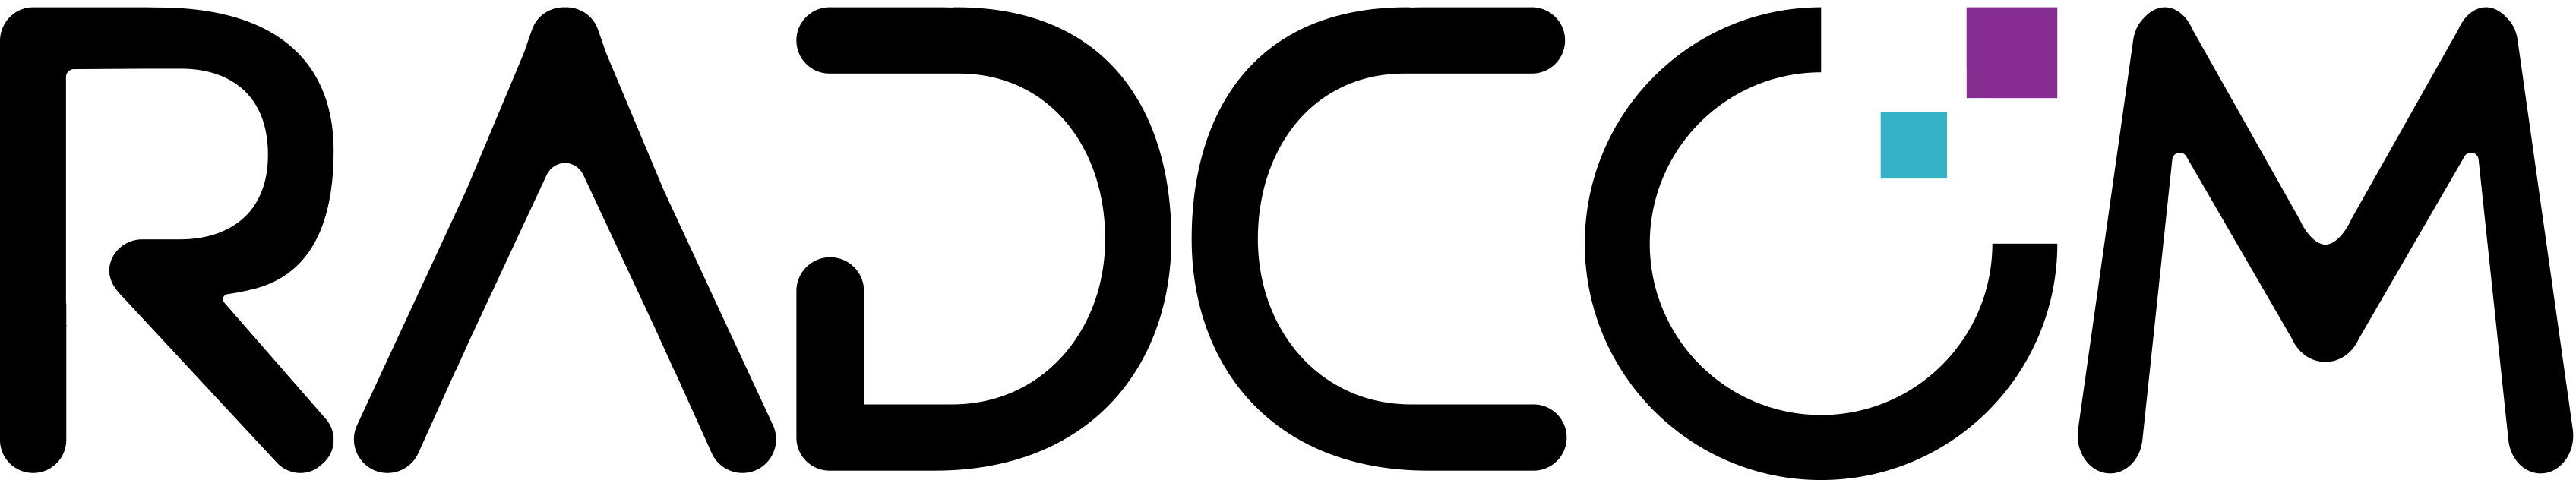 Sapiens_logo